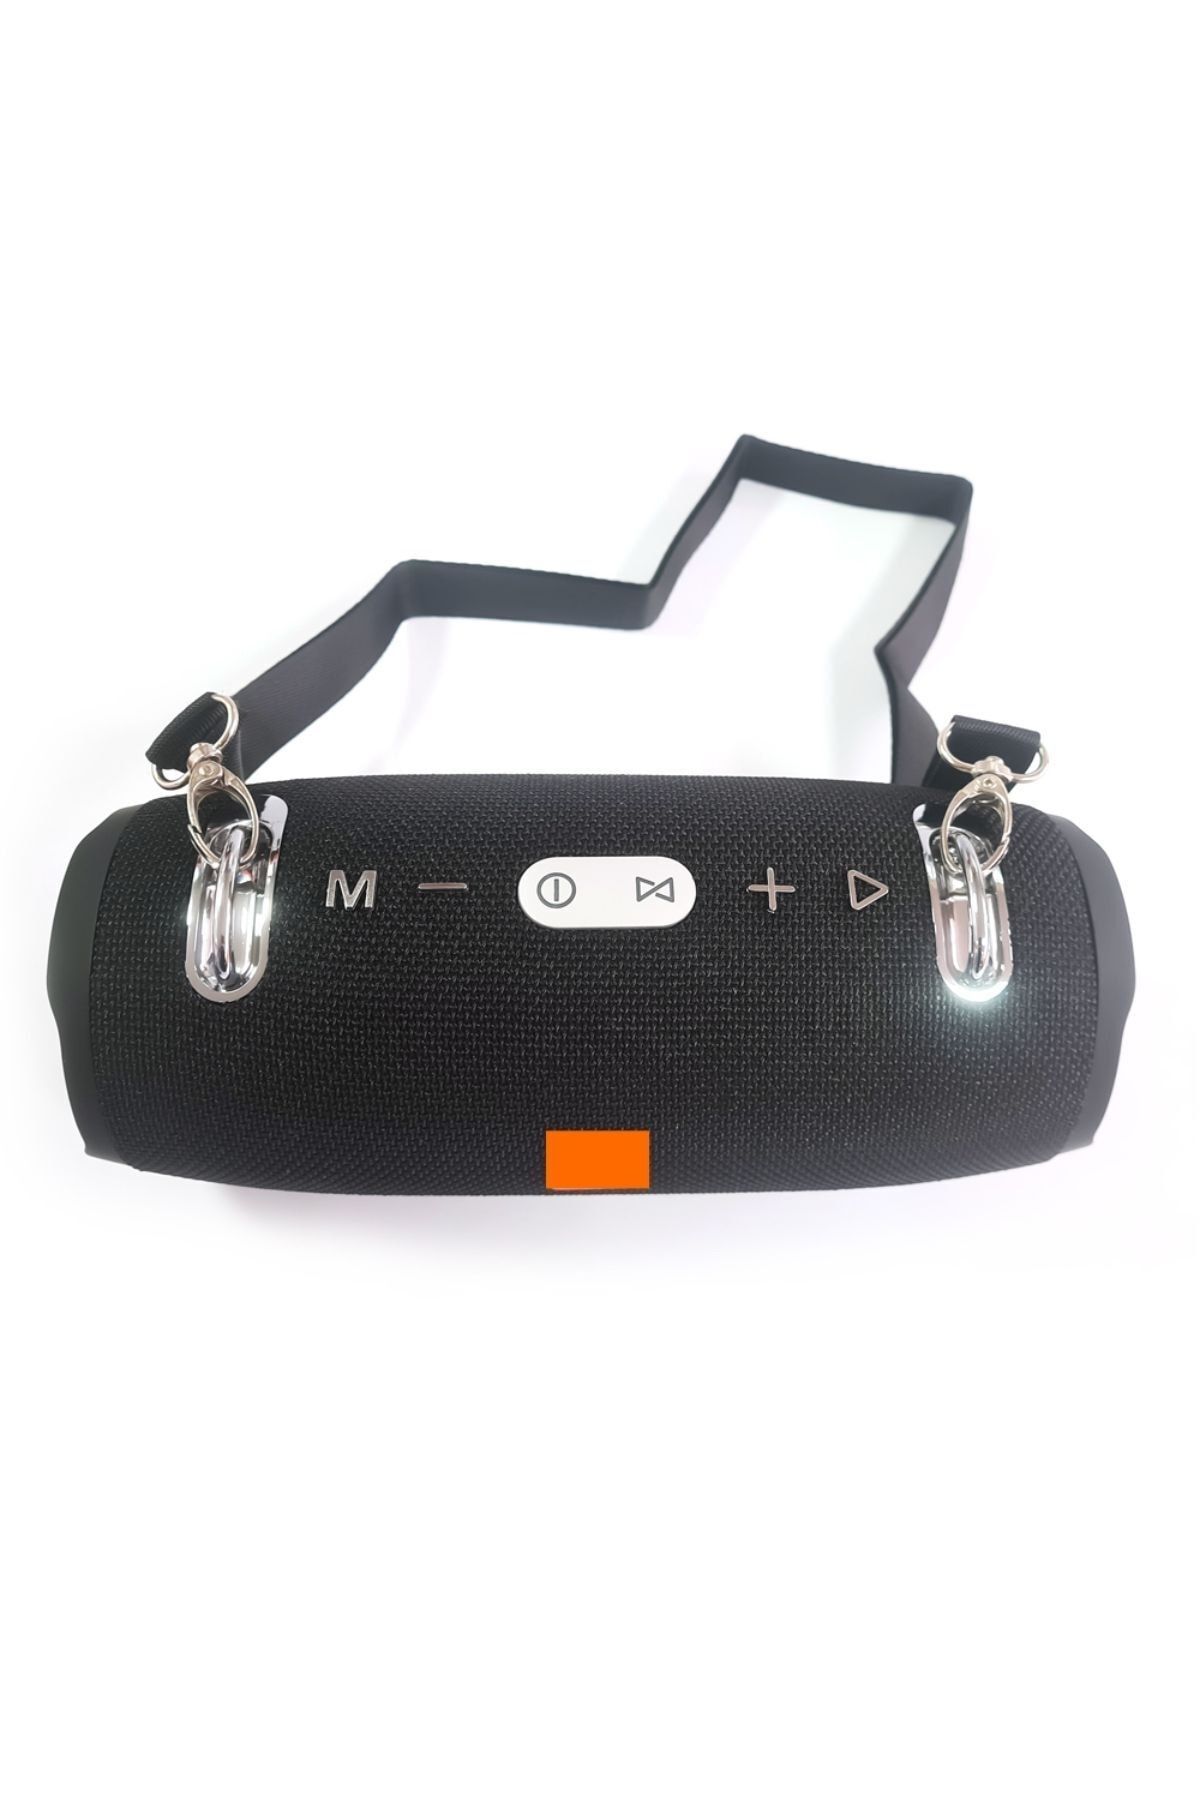 MESRO Xtreme 2 Su Geçirmez Taşınabilir Askılı Süper Bass Speaker Bluetooth Hoparlör